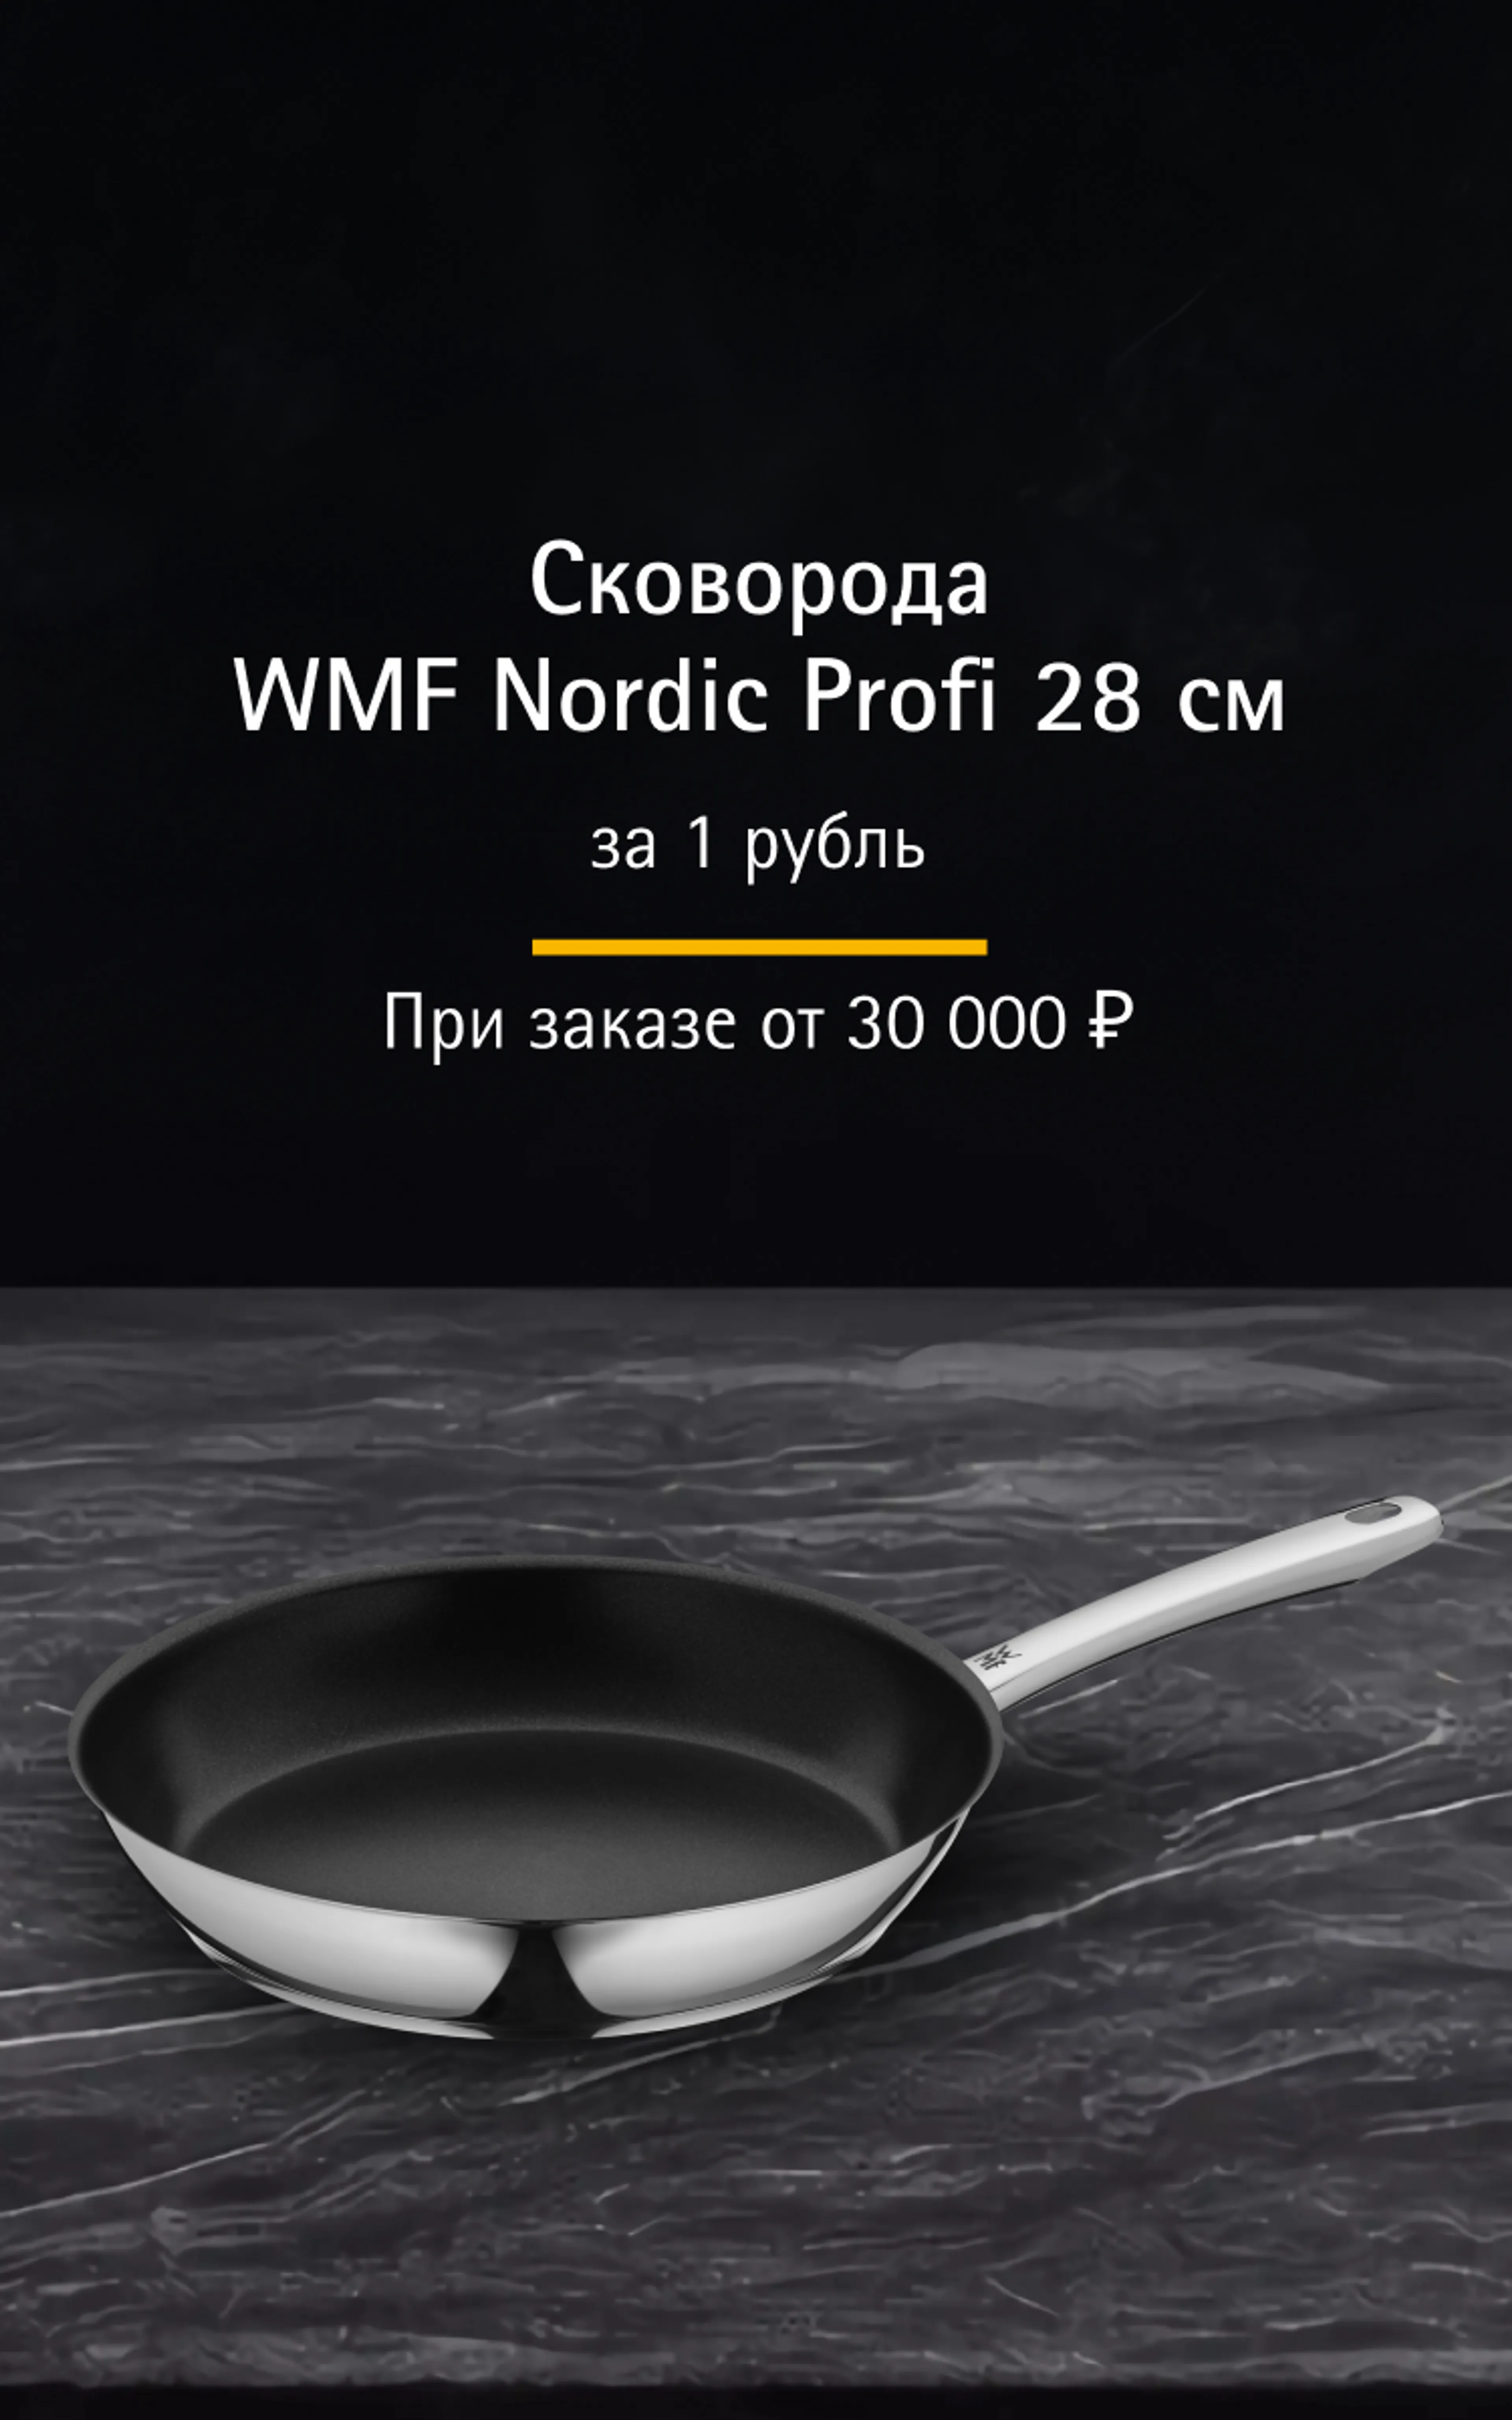 Сковорода за 1 рубль!